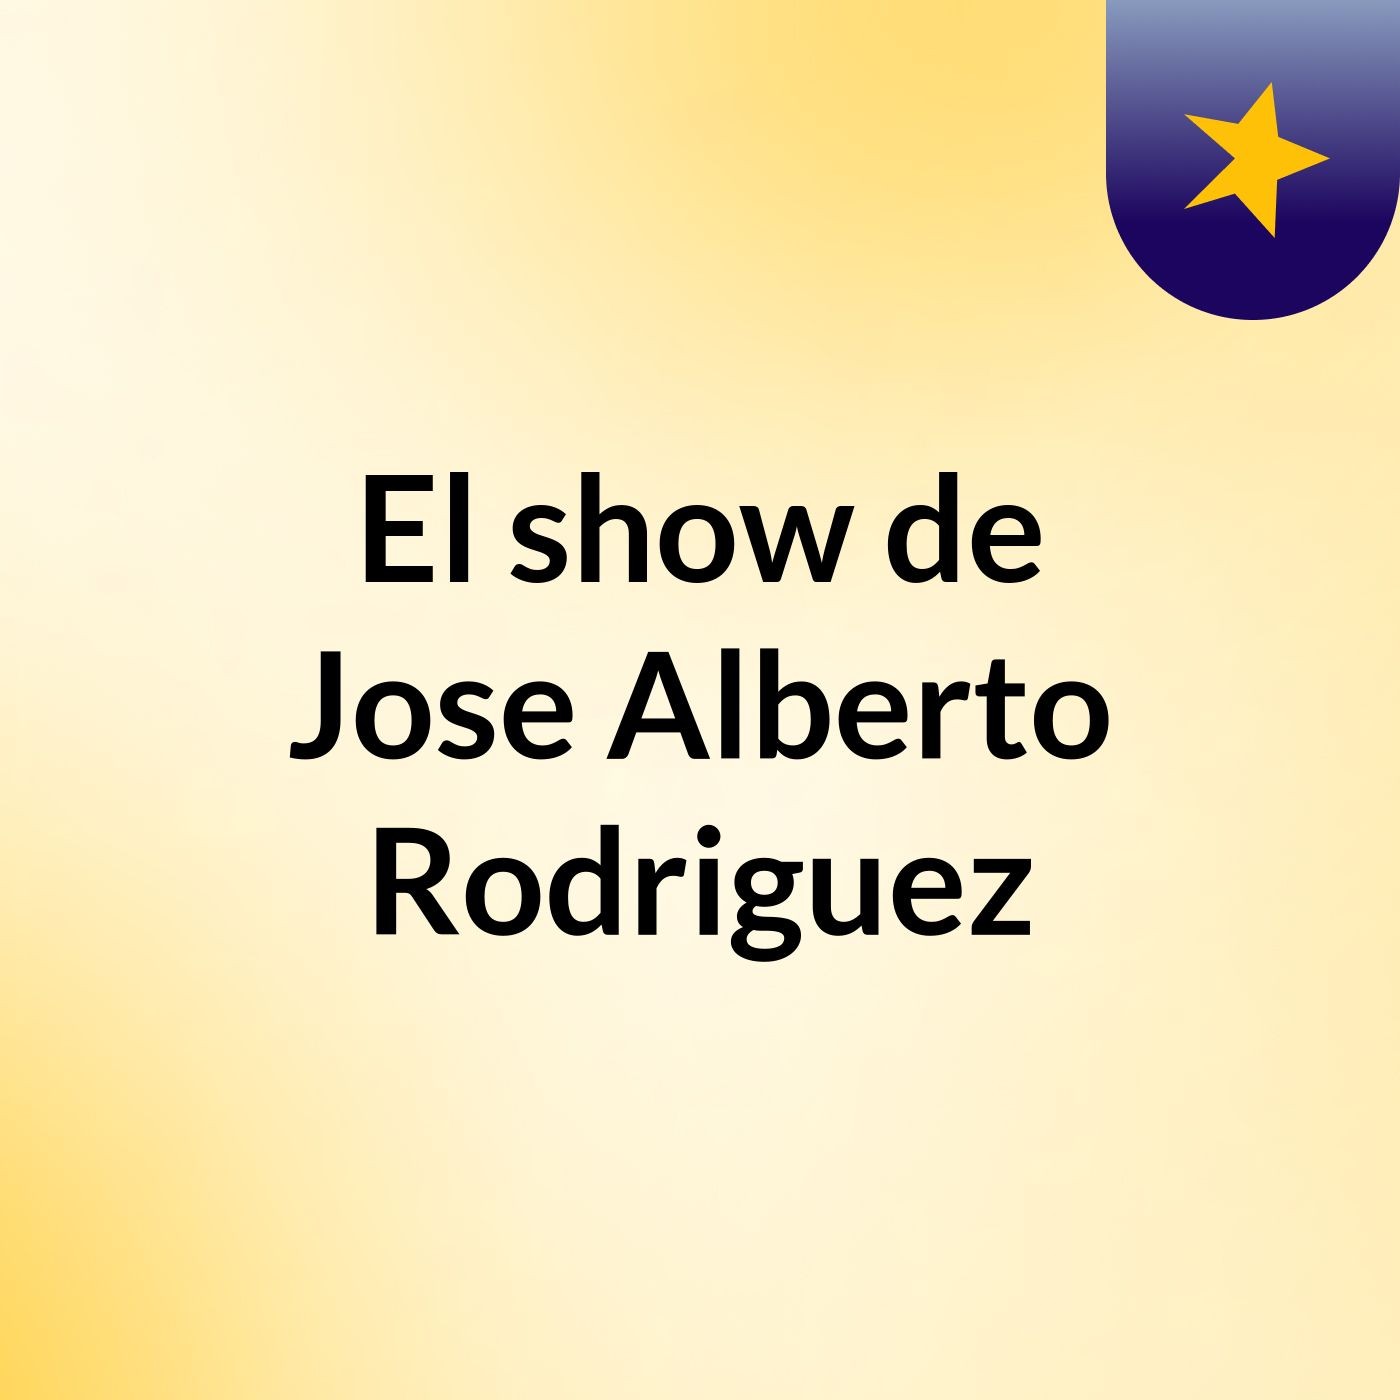 El show de Jose Alberto Rodriguez